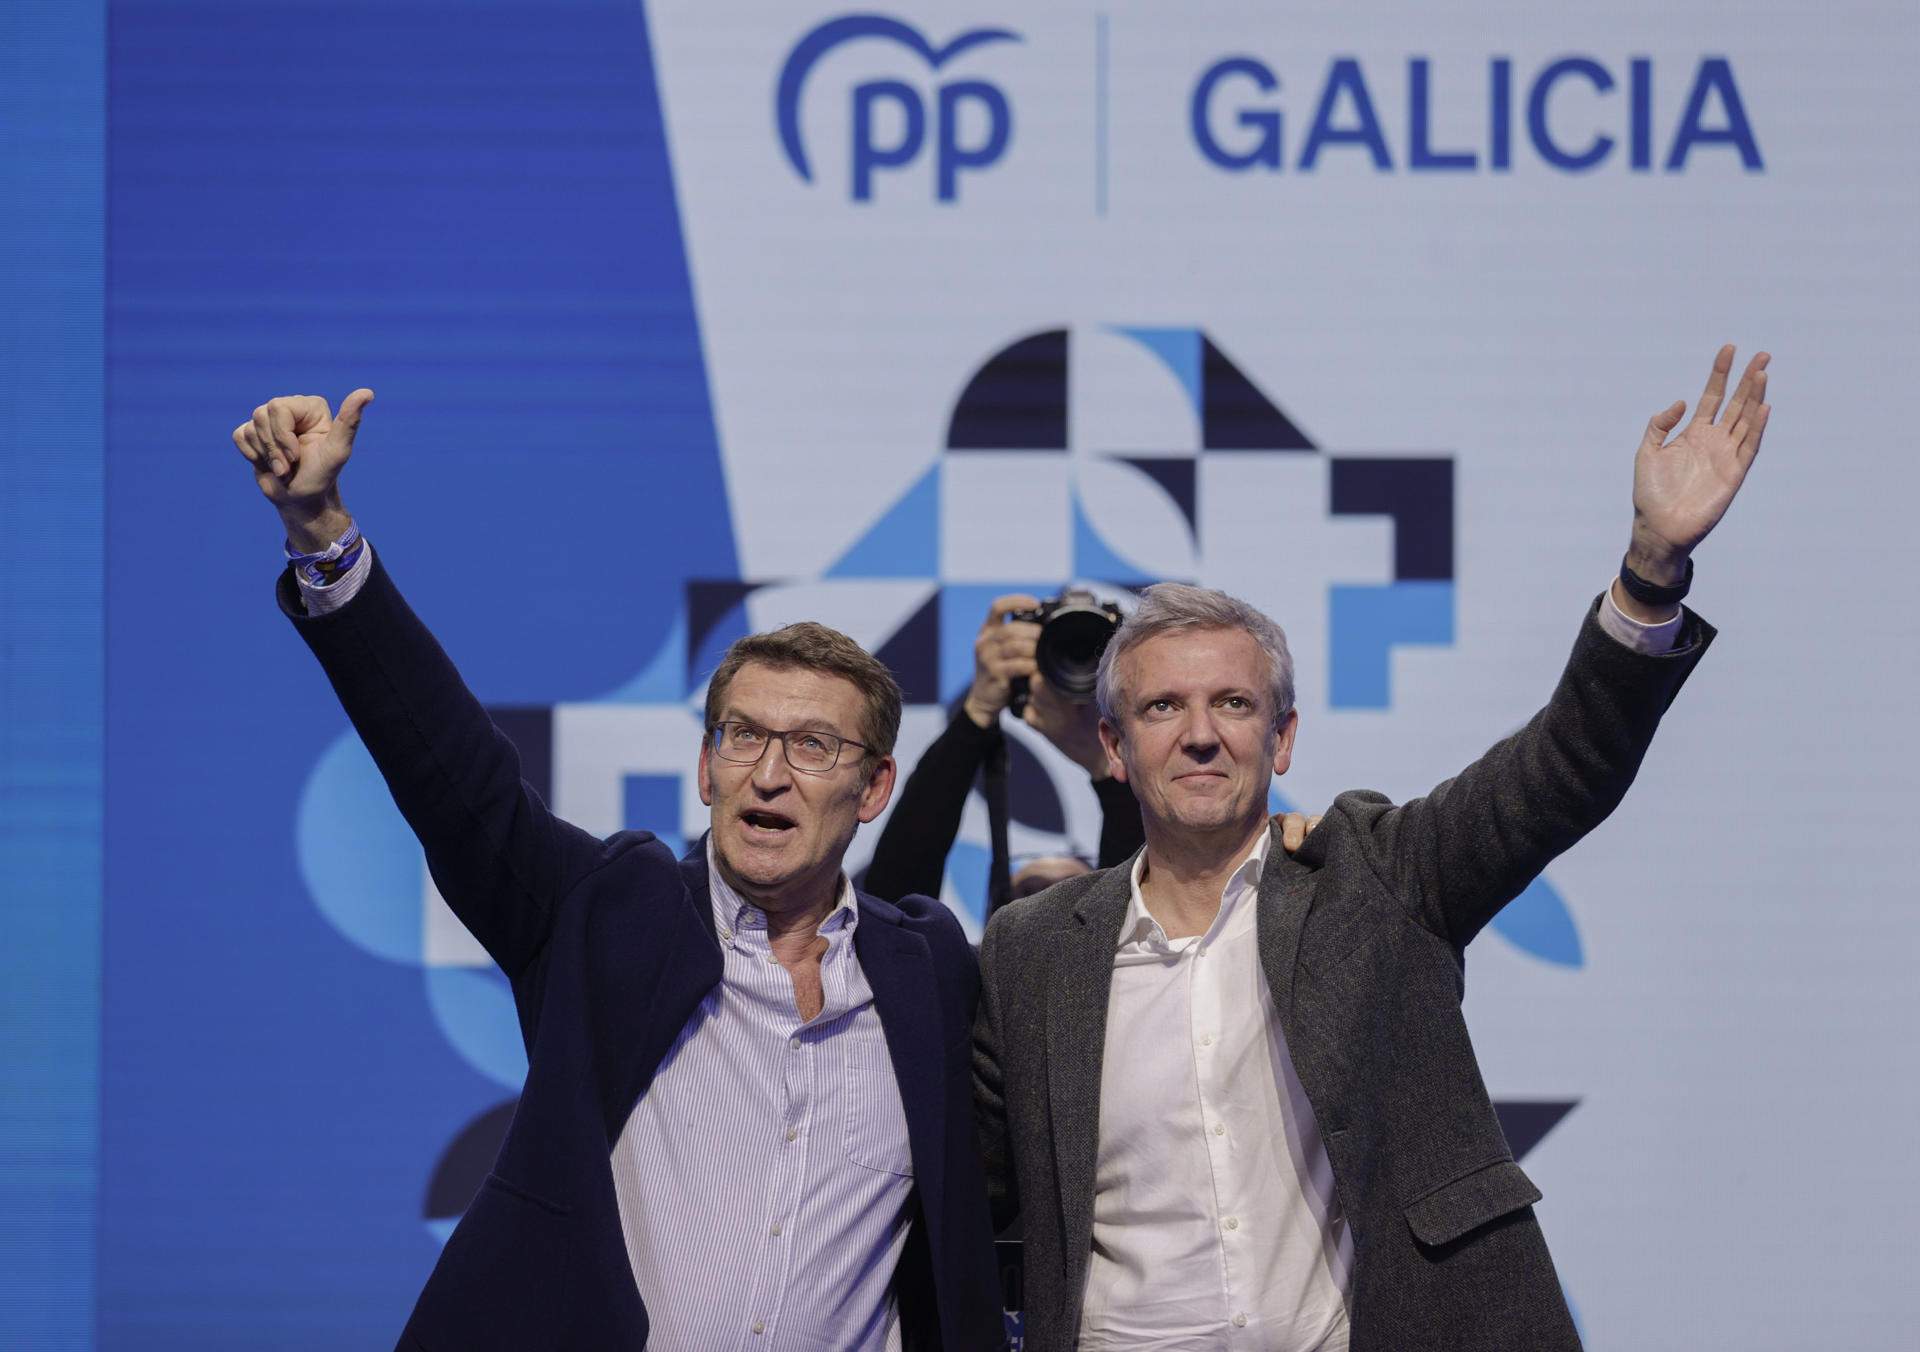 Feijóo situa el PP com l’única opció per no “importar” a Galícia la “fractura social” de Catalunya